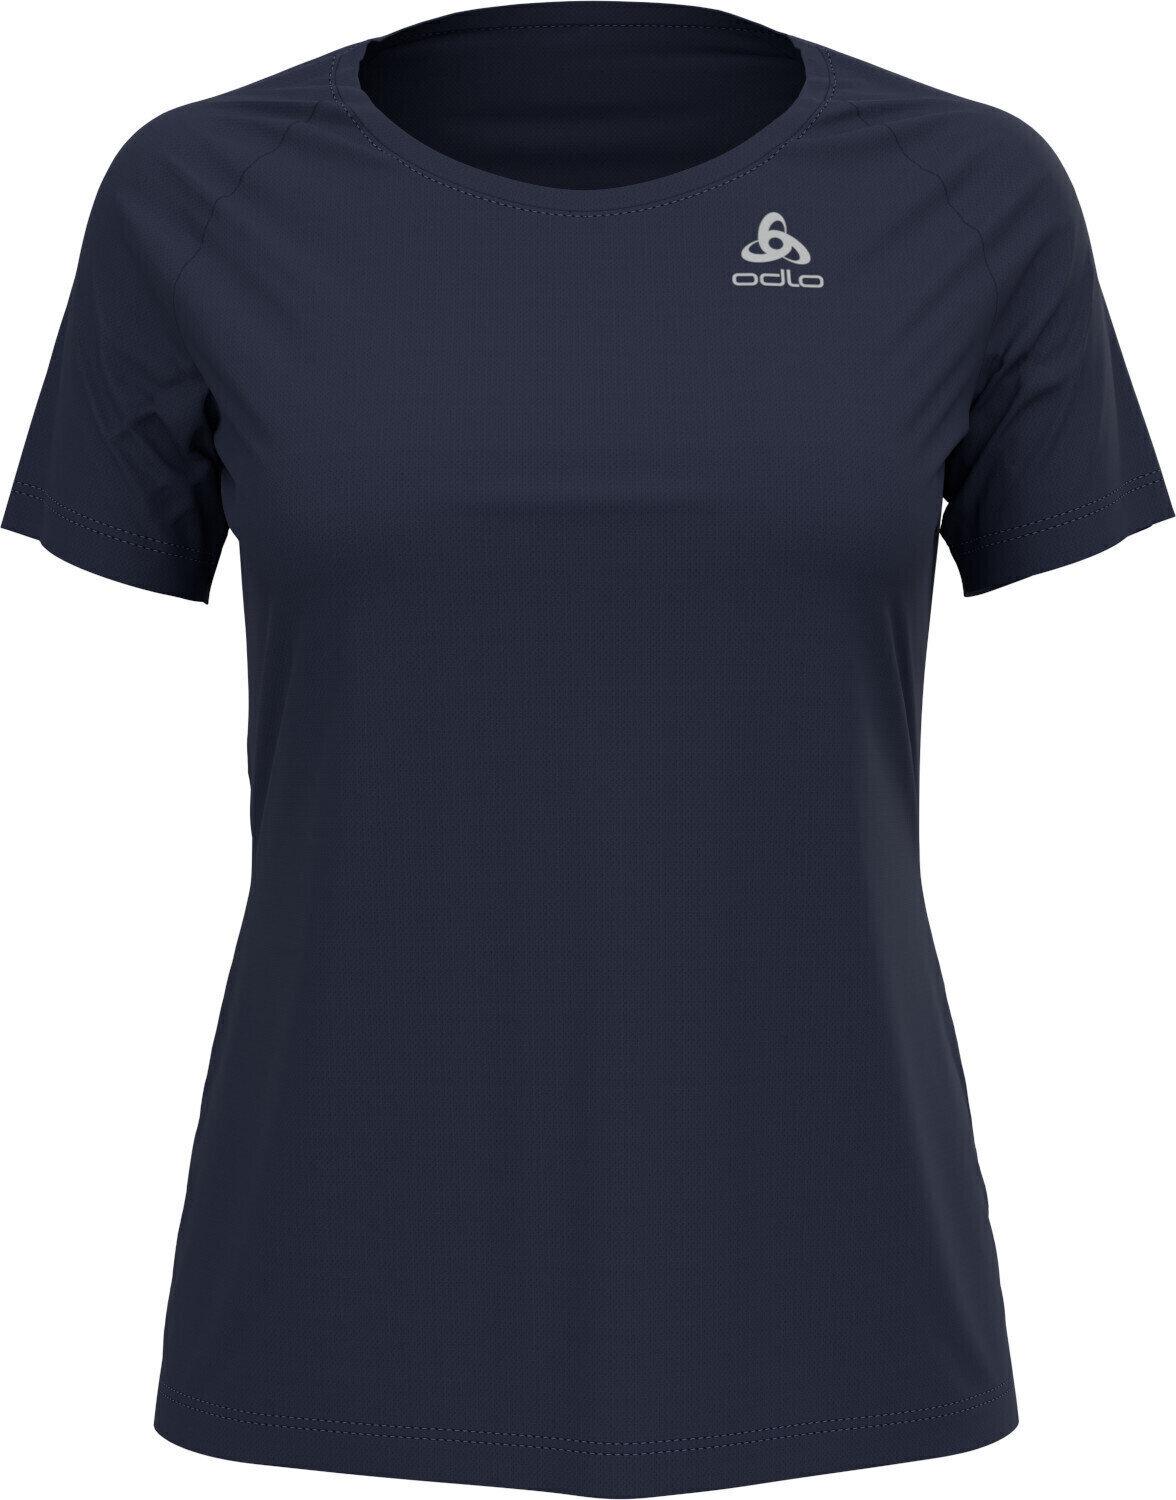 Běžecké tričko s krátkým rukávem
 Odlo Element Light T-Shirt Diving Navy XS Běžecké tričko s krátkým rukávem